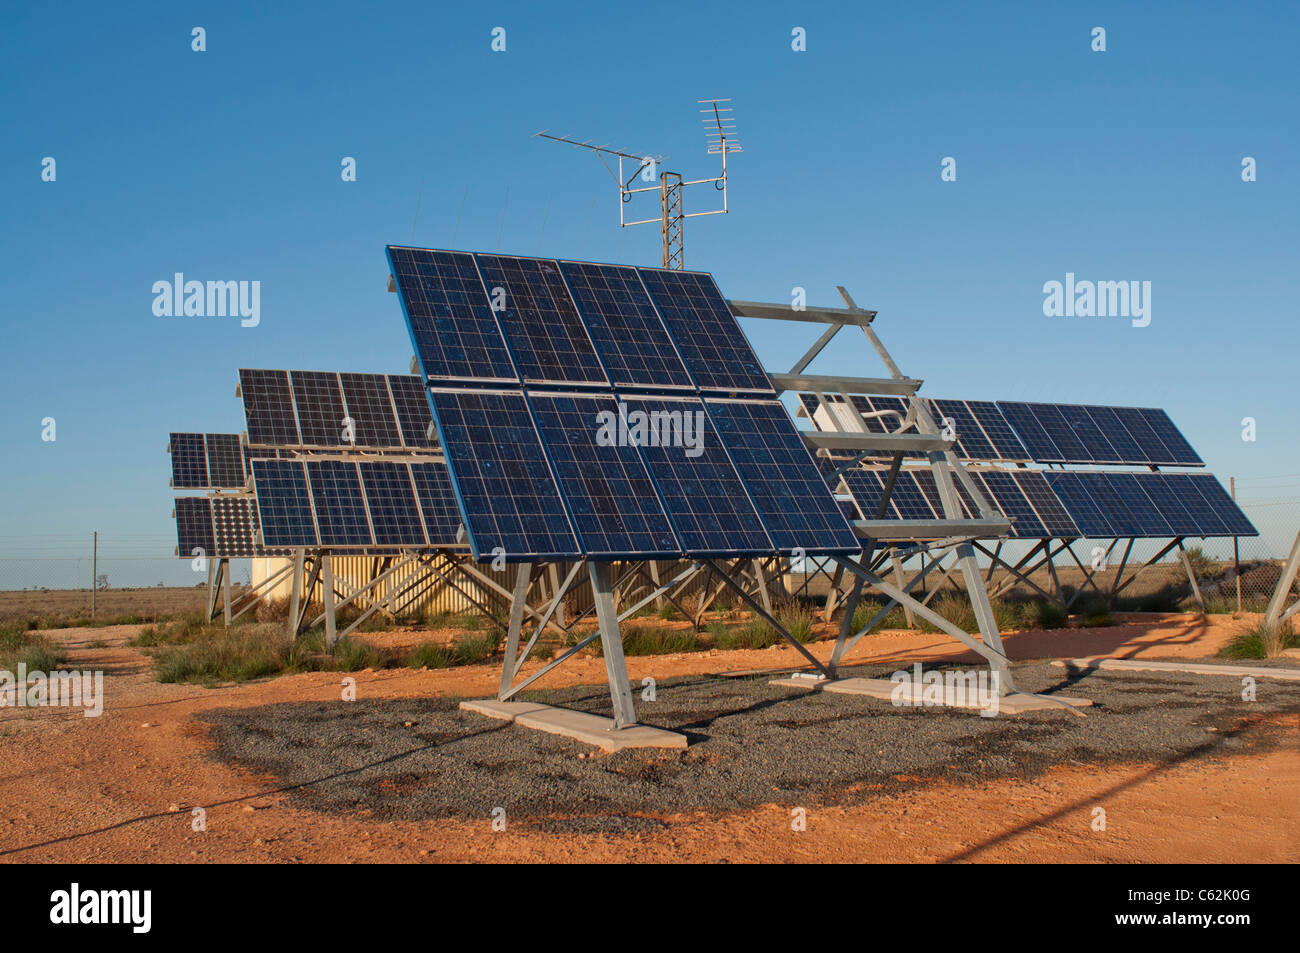 Les panneaux solaires utilisés pour alimenter des relais téléphoniques dans l'outback australien Banque D'Images